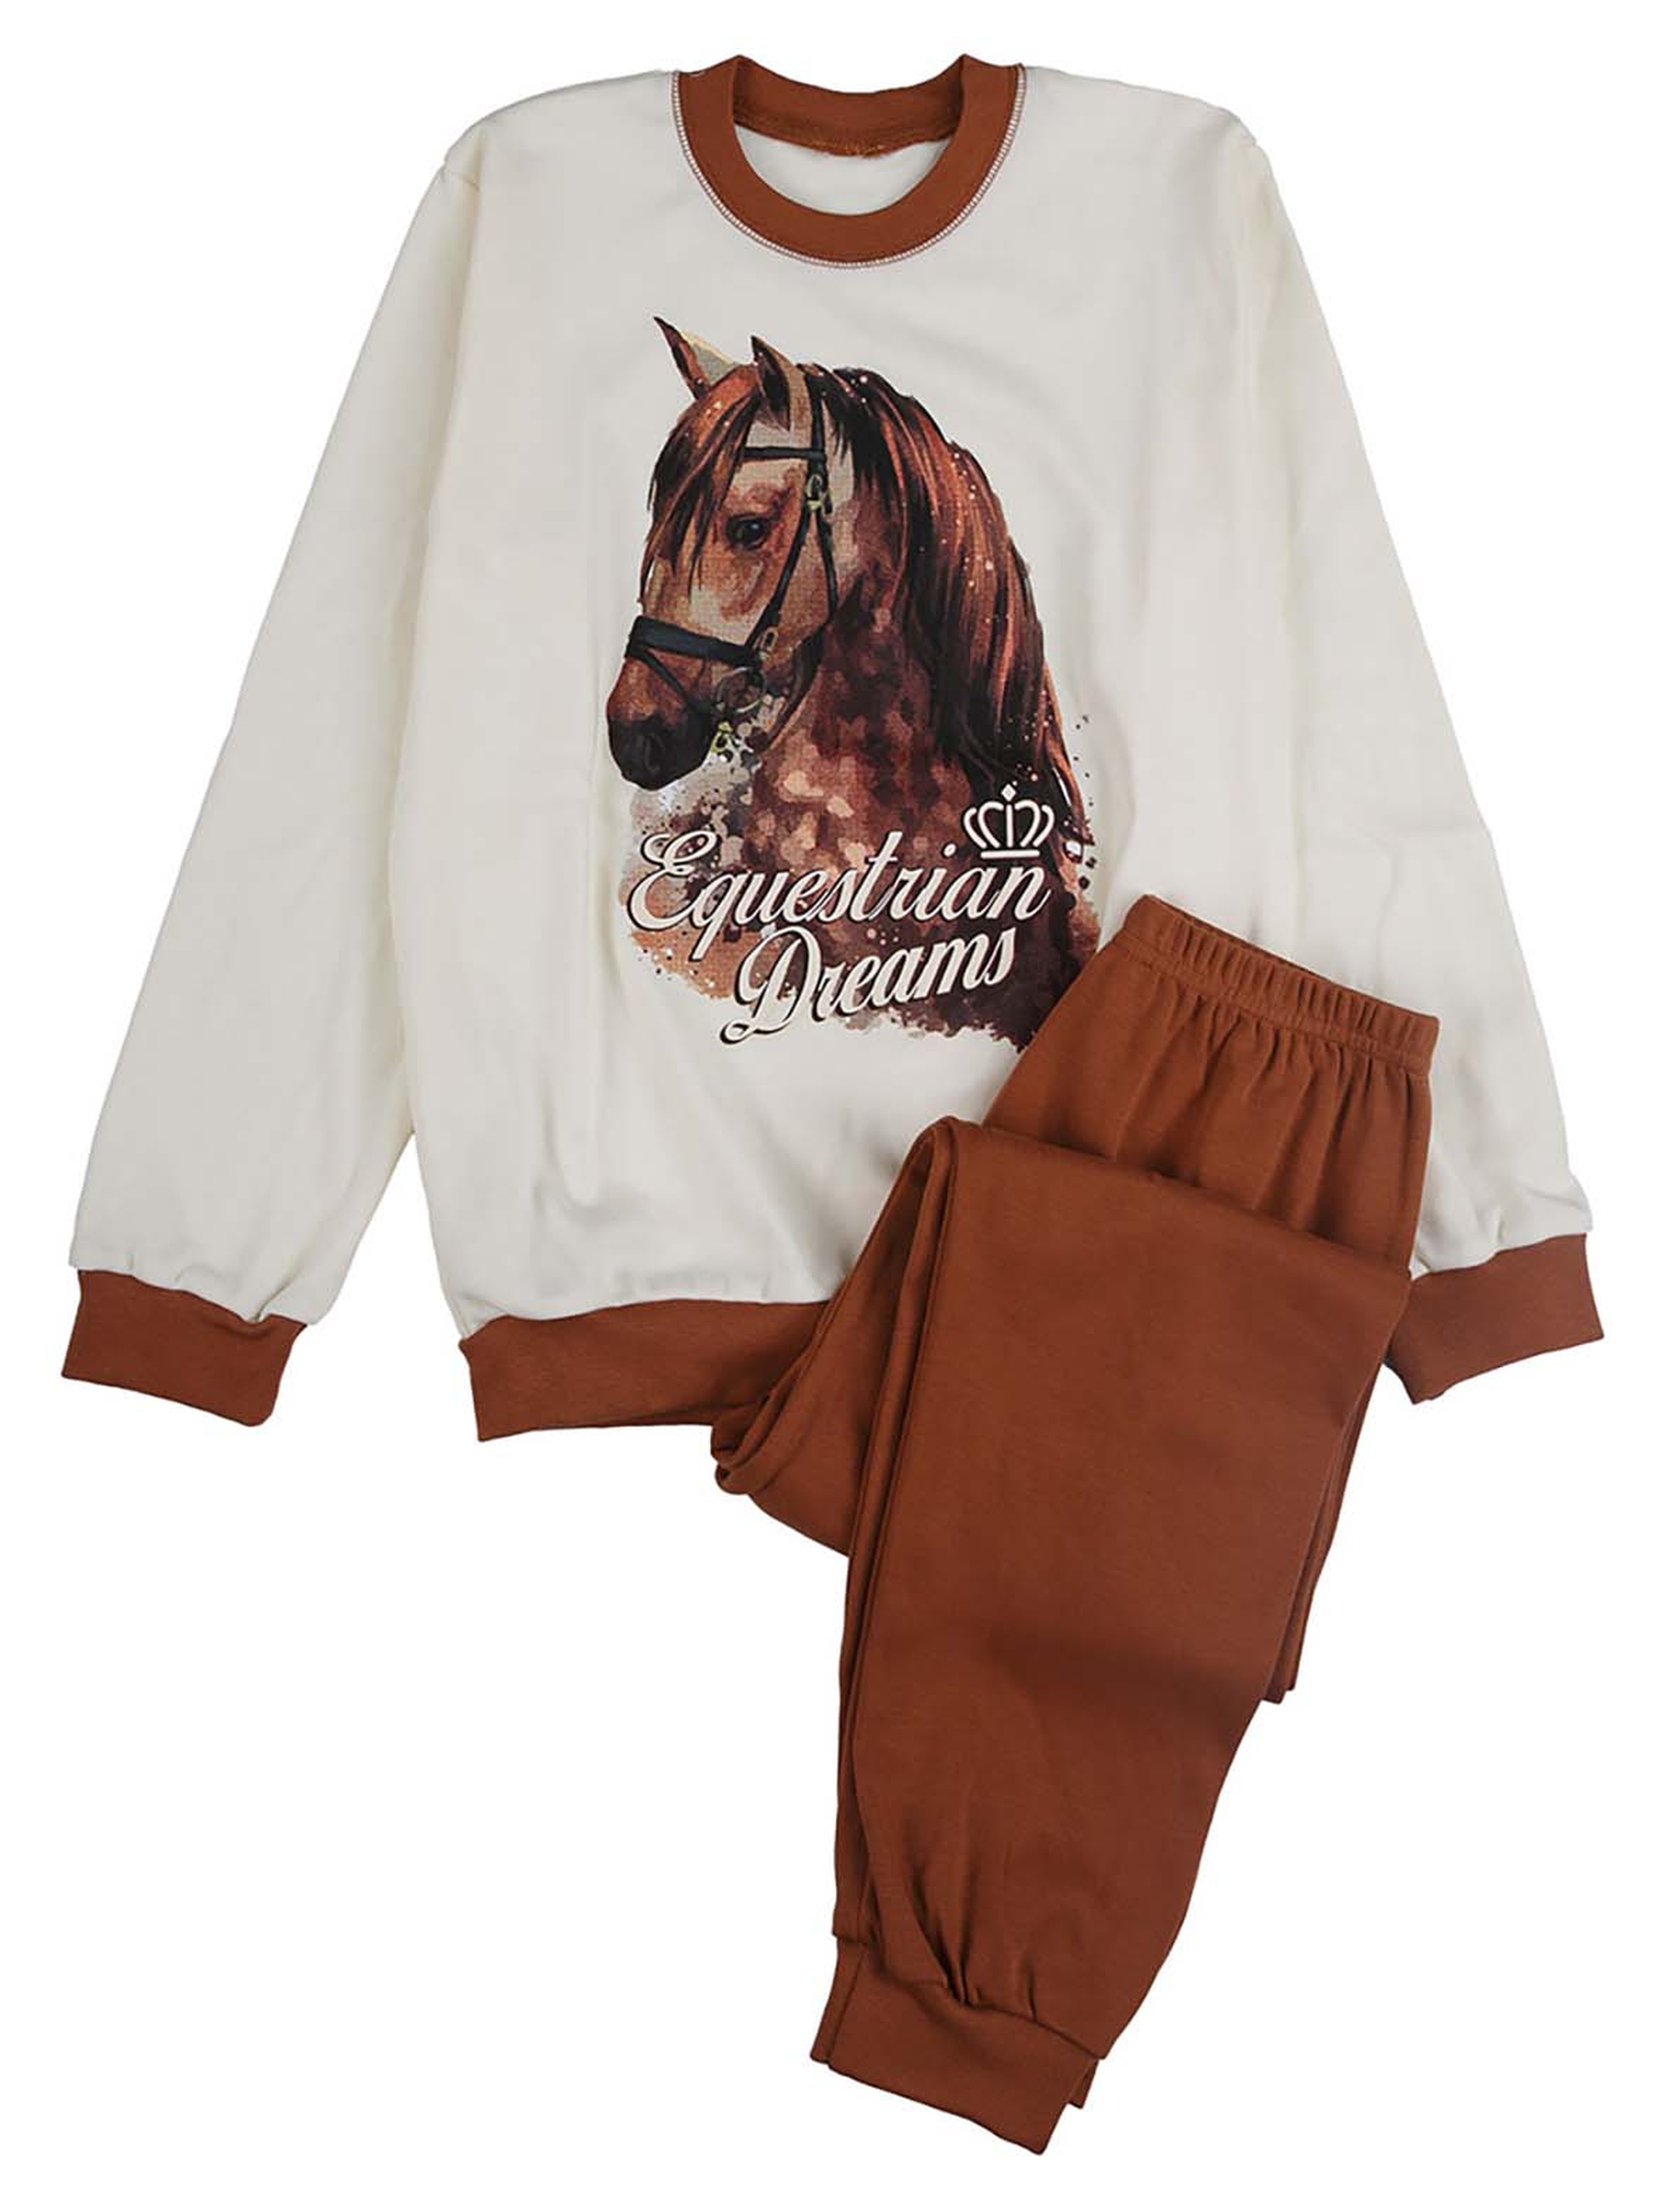 Dziewczęca beżowa piżama z nadrukiem konia Tup Tup